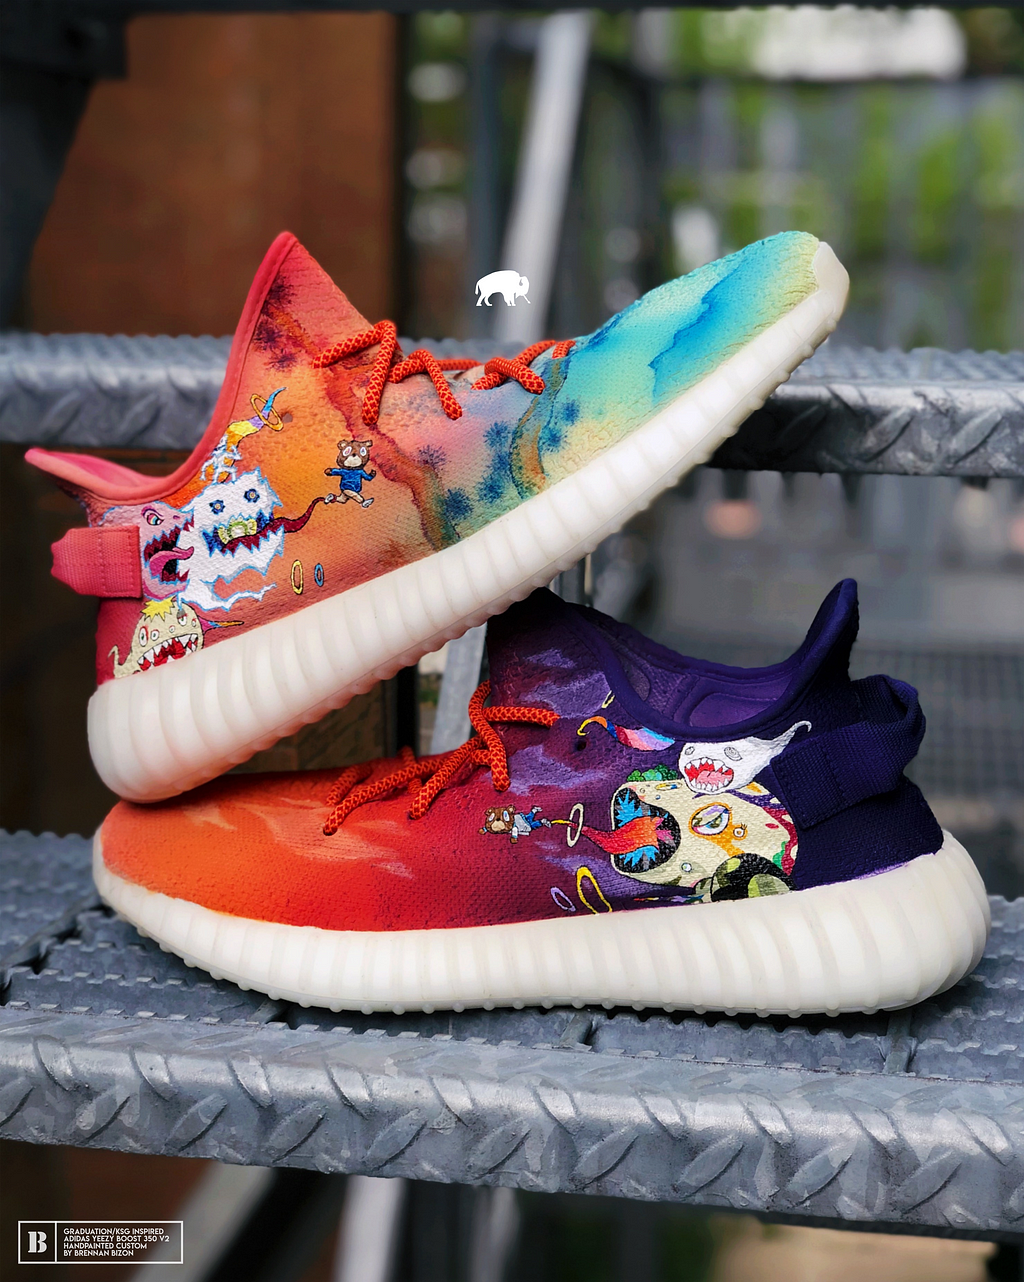 custom sneakers, Kanye West “Graduation” Yeezy by Brennan Bizon